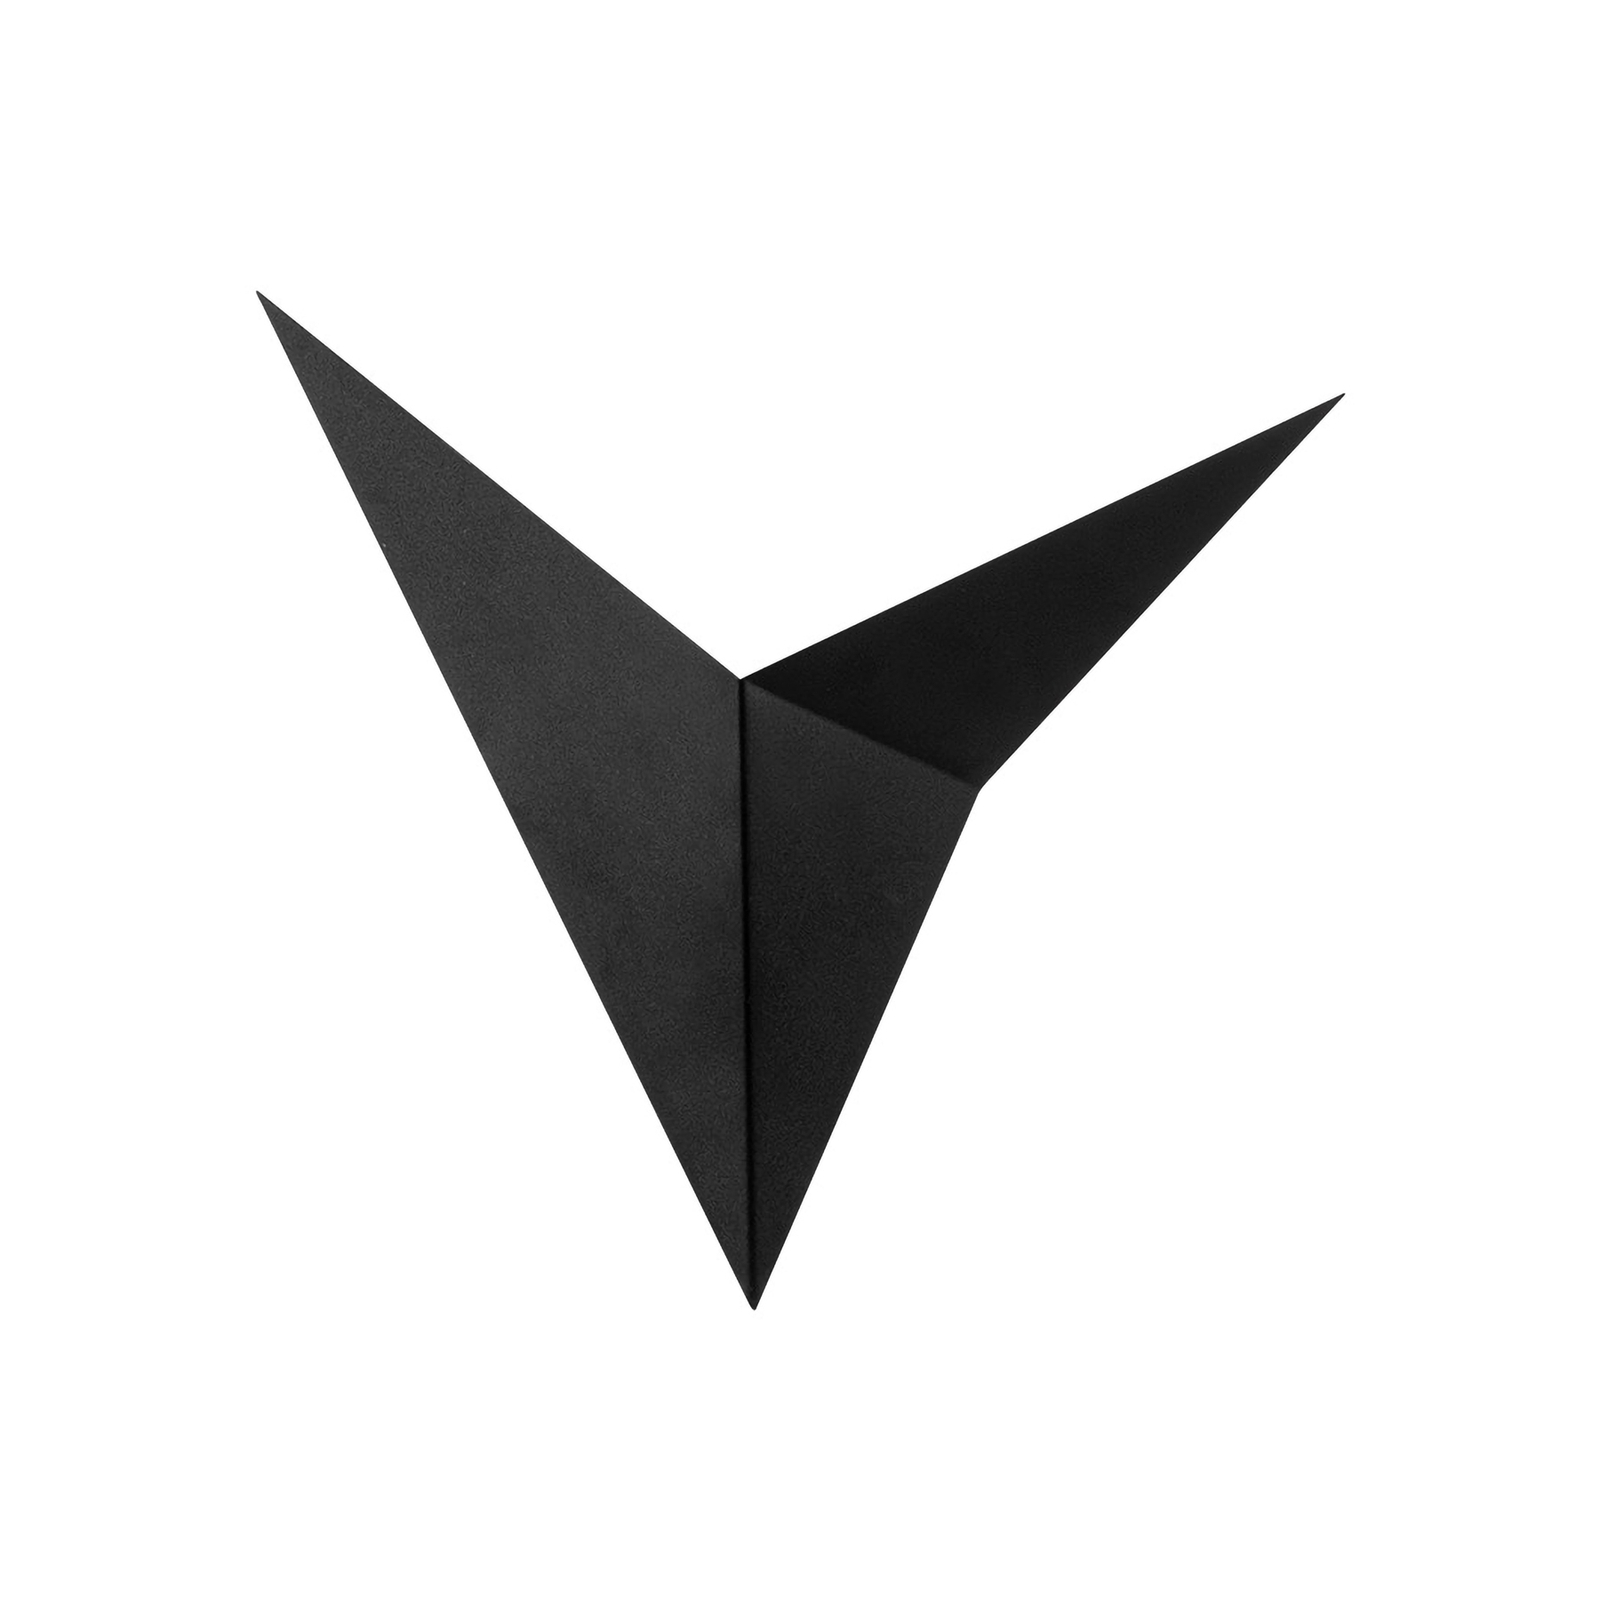 Wandlamp Bird 3201, driehoekig ontworpen, zwart